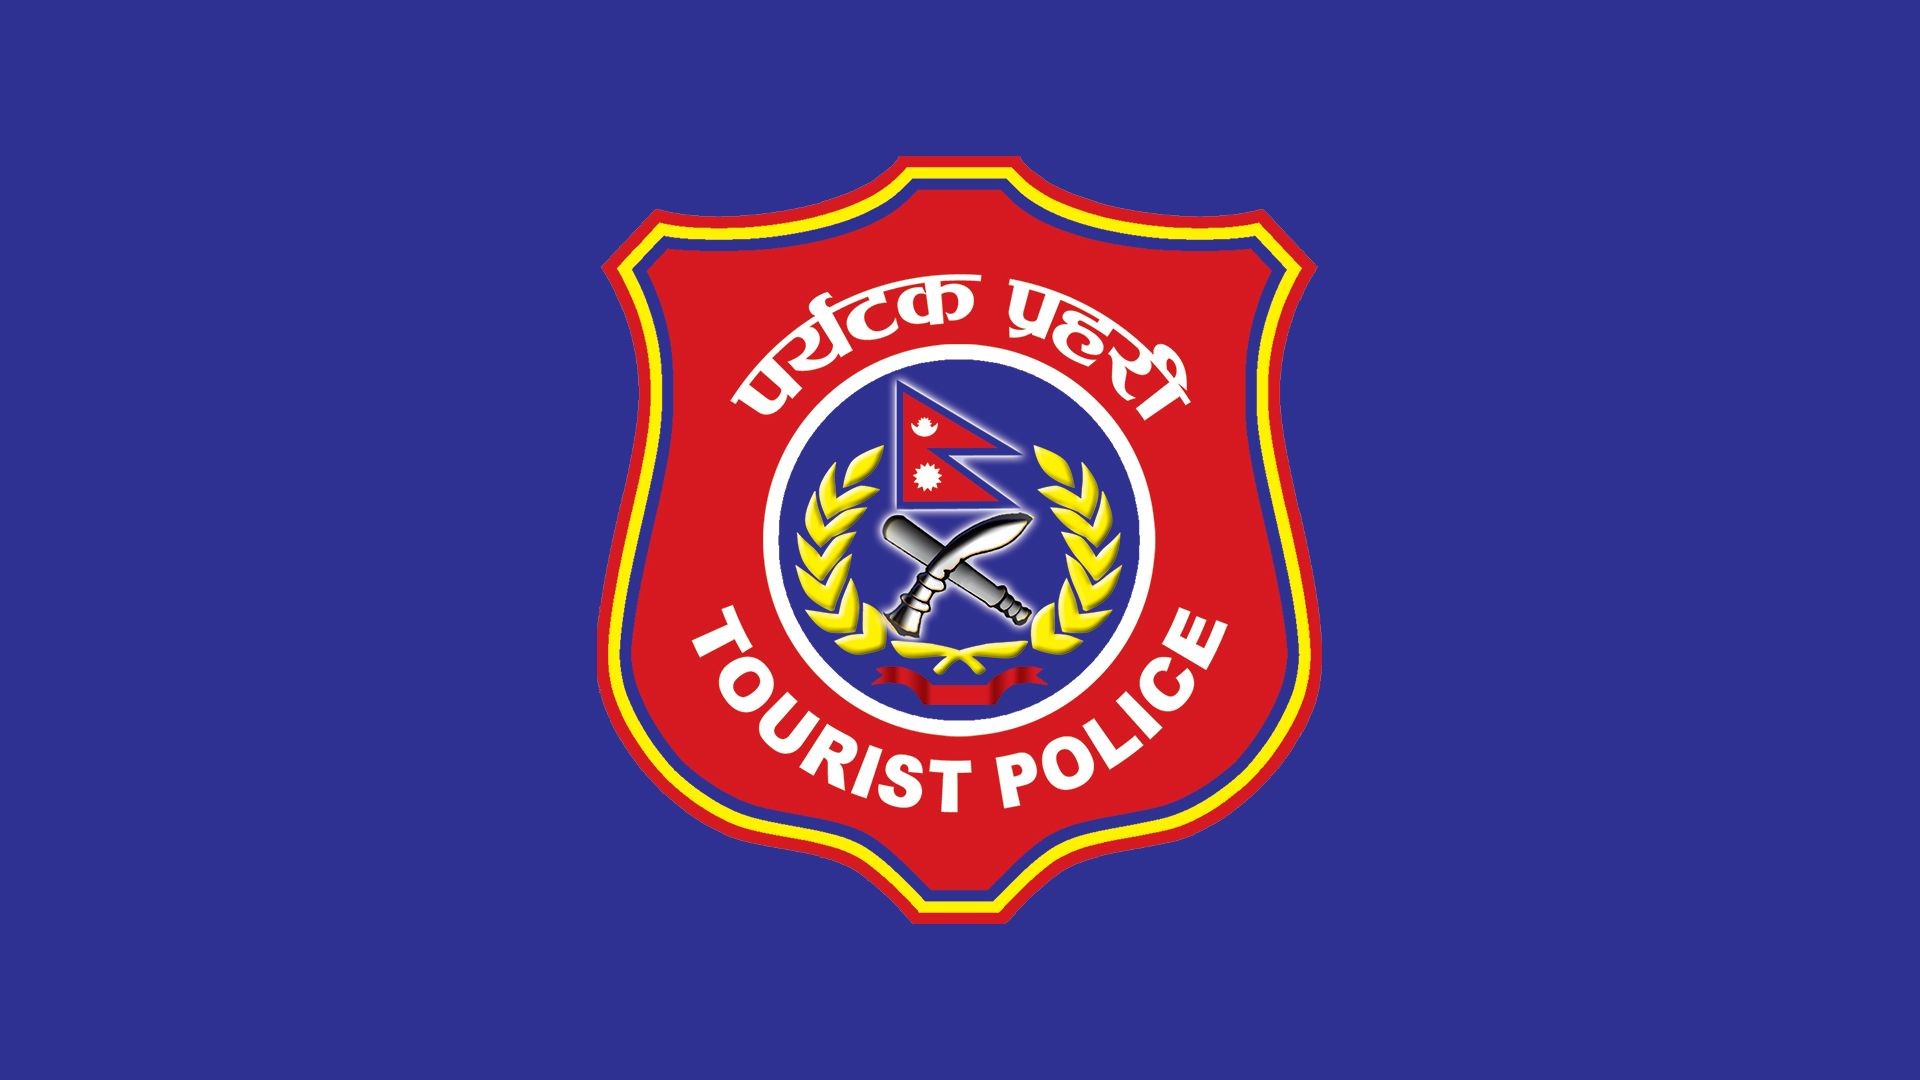 Tourist police receive 370 complaints